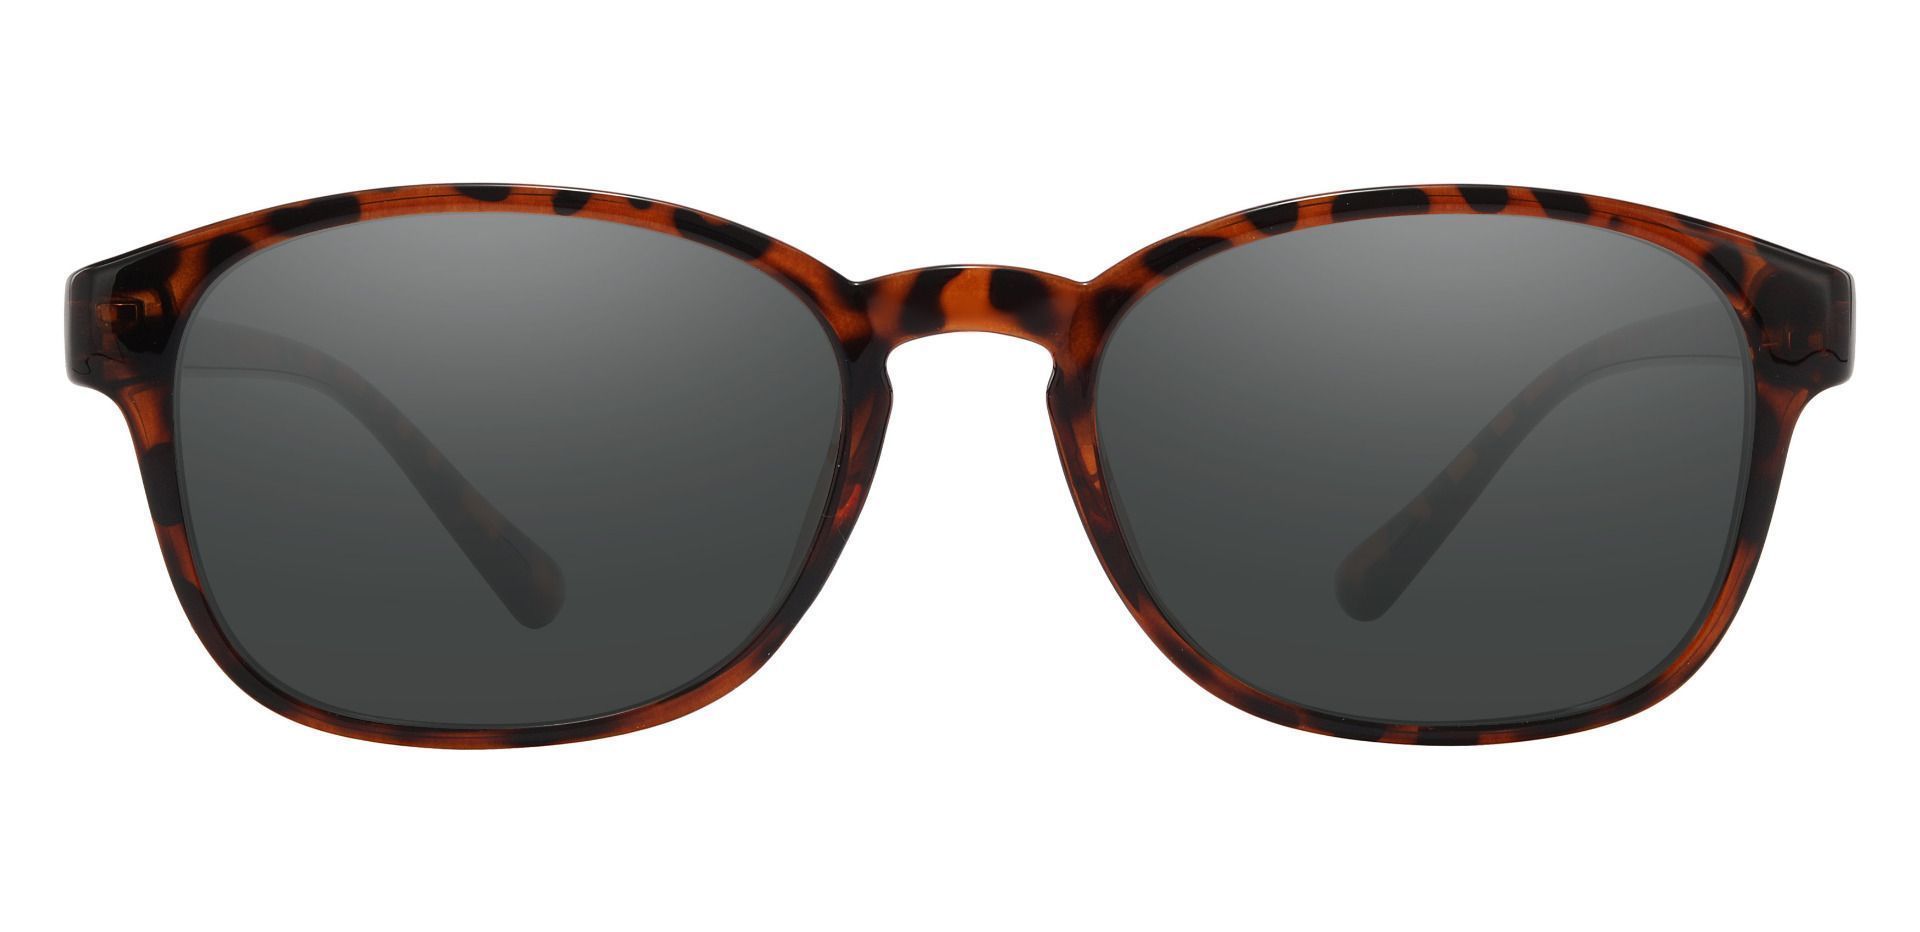 Casper Rectangle Prescription Sunglasses - Tortoise Frame With Gray Lenses